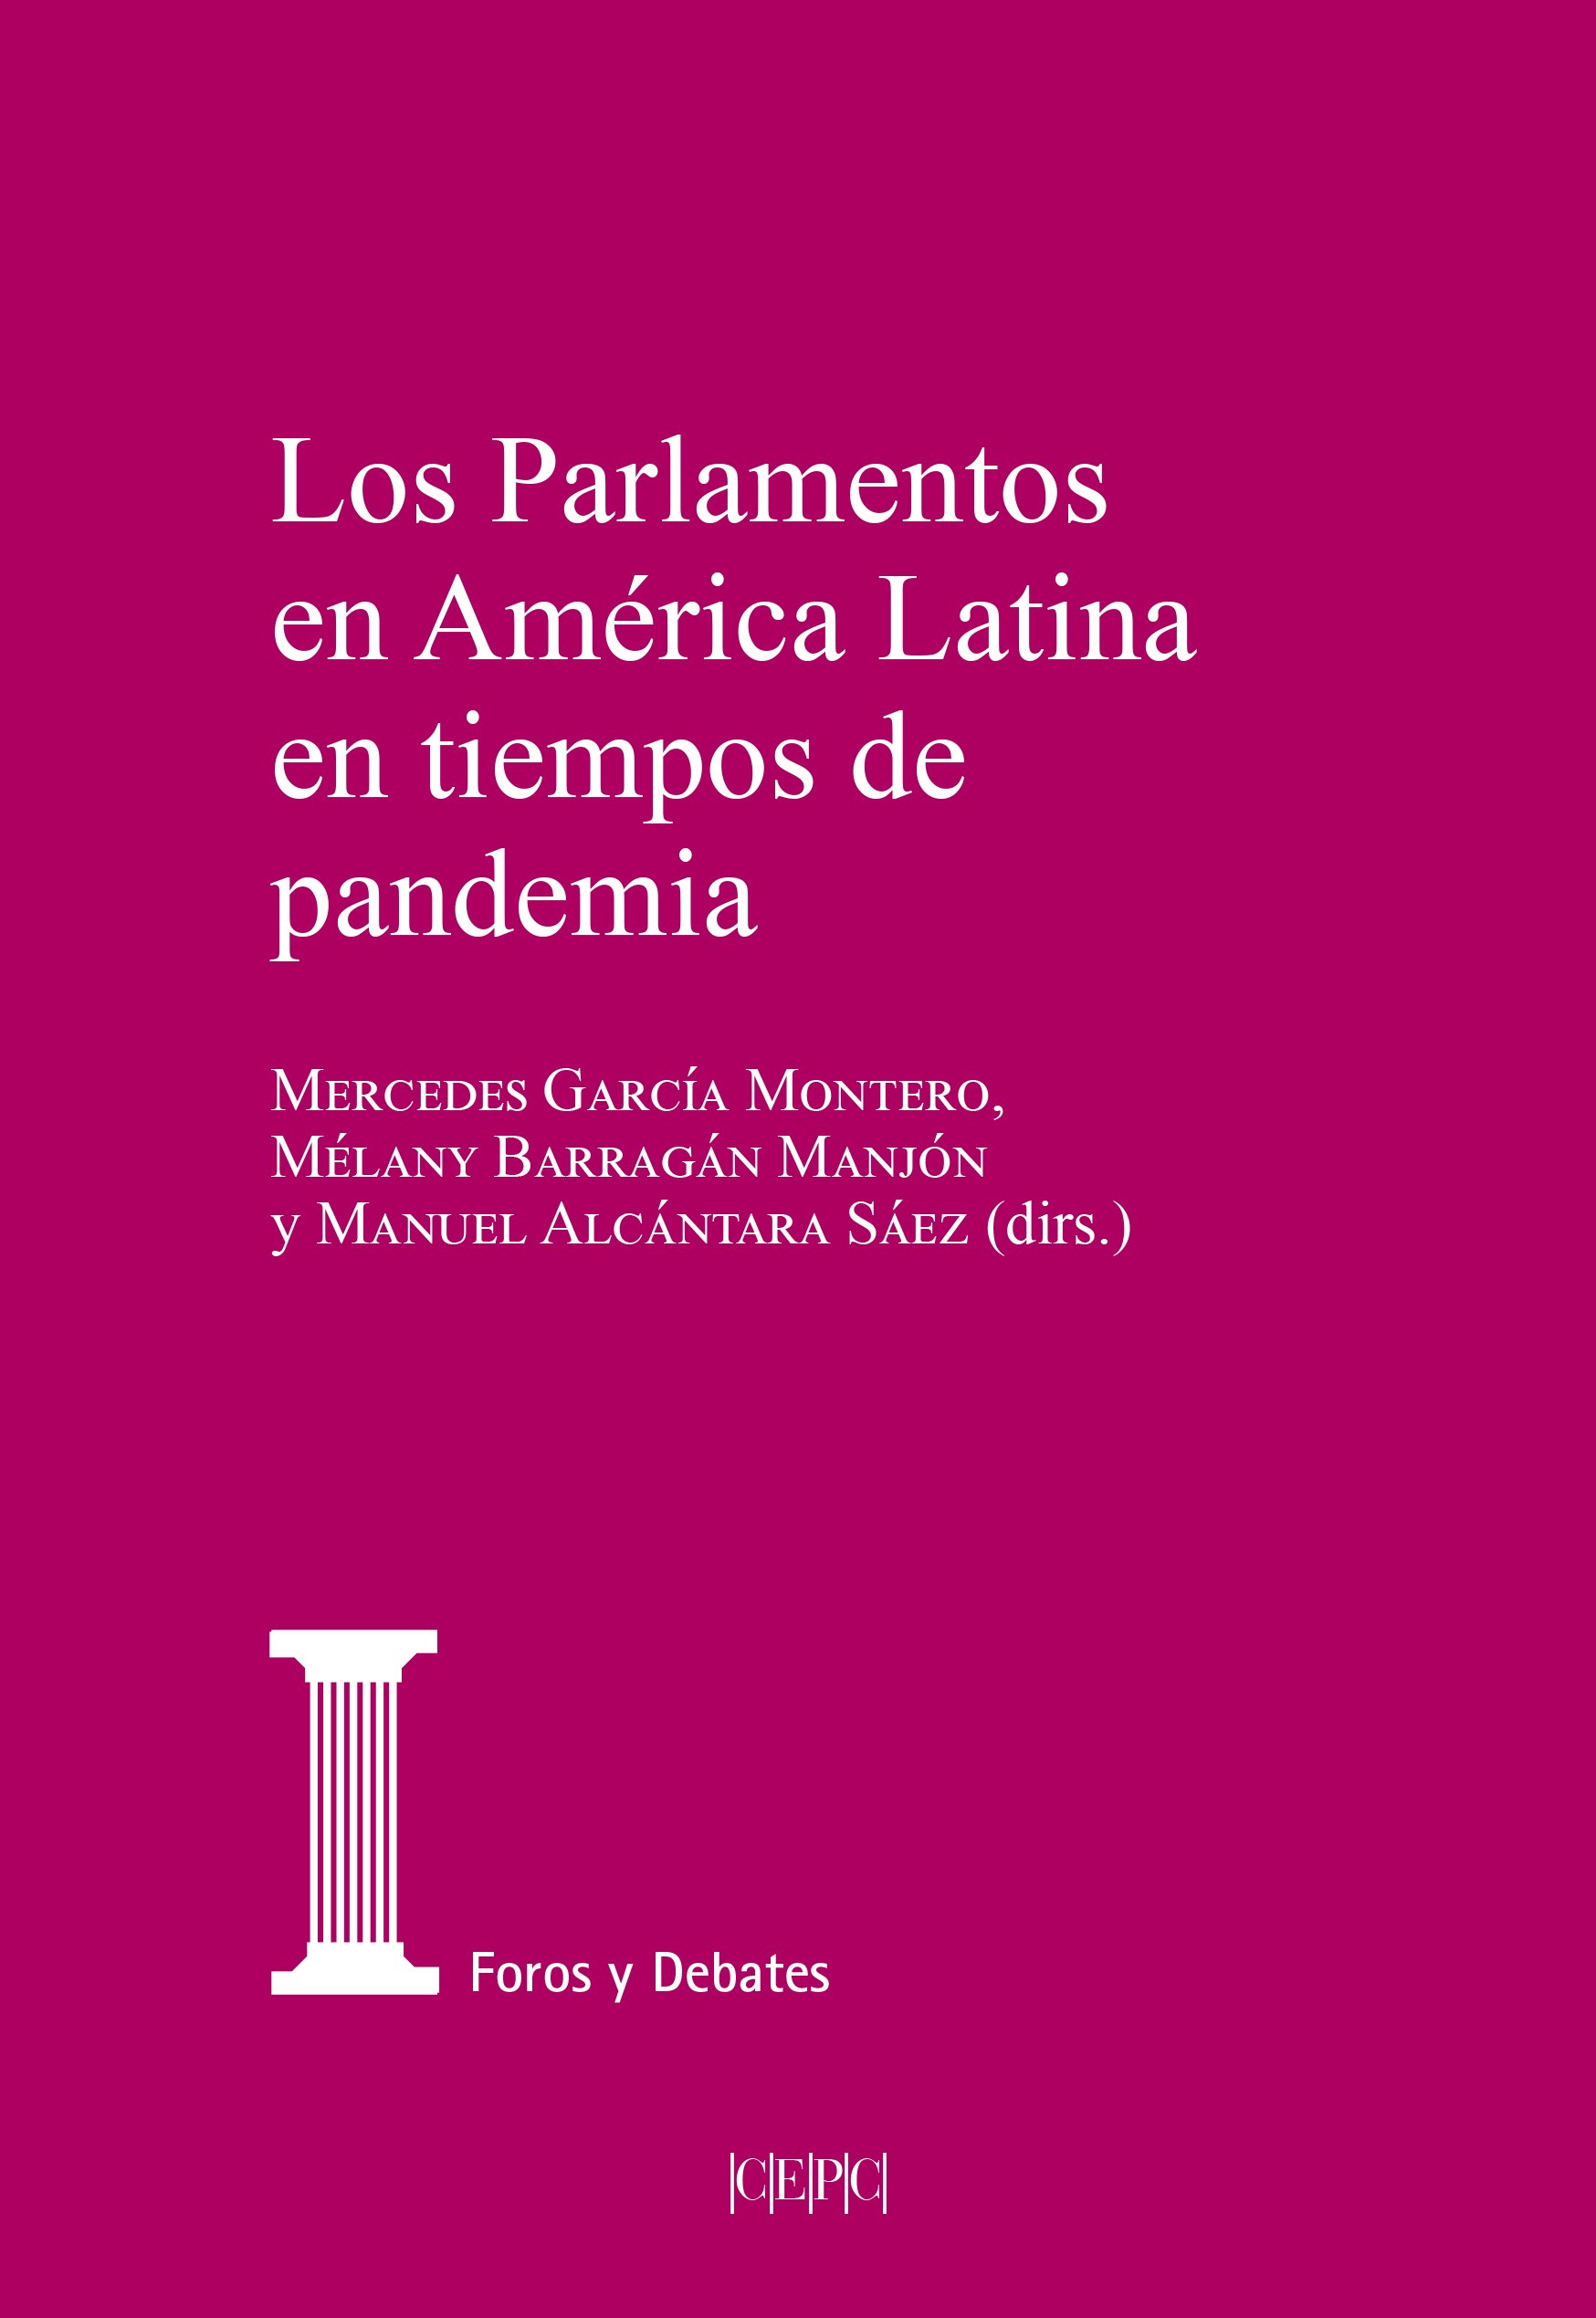 Portada libro "Los parlamentos en América Latina en tiempos de pandemia"